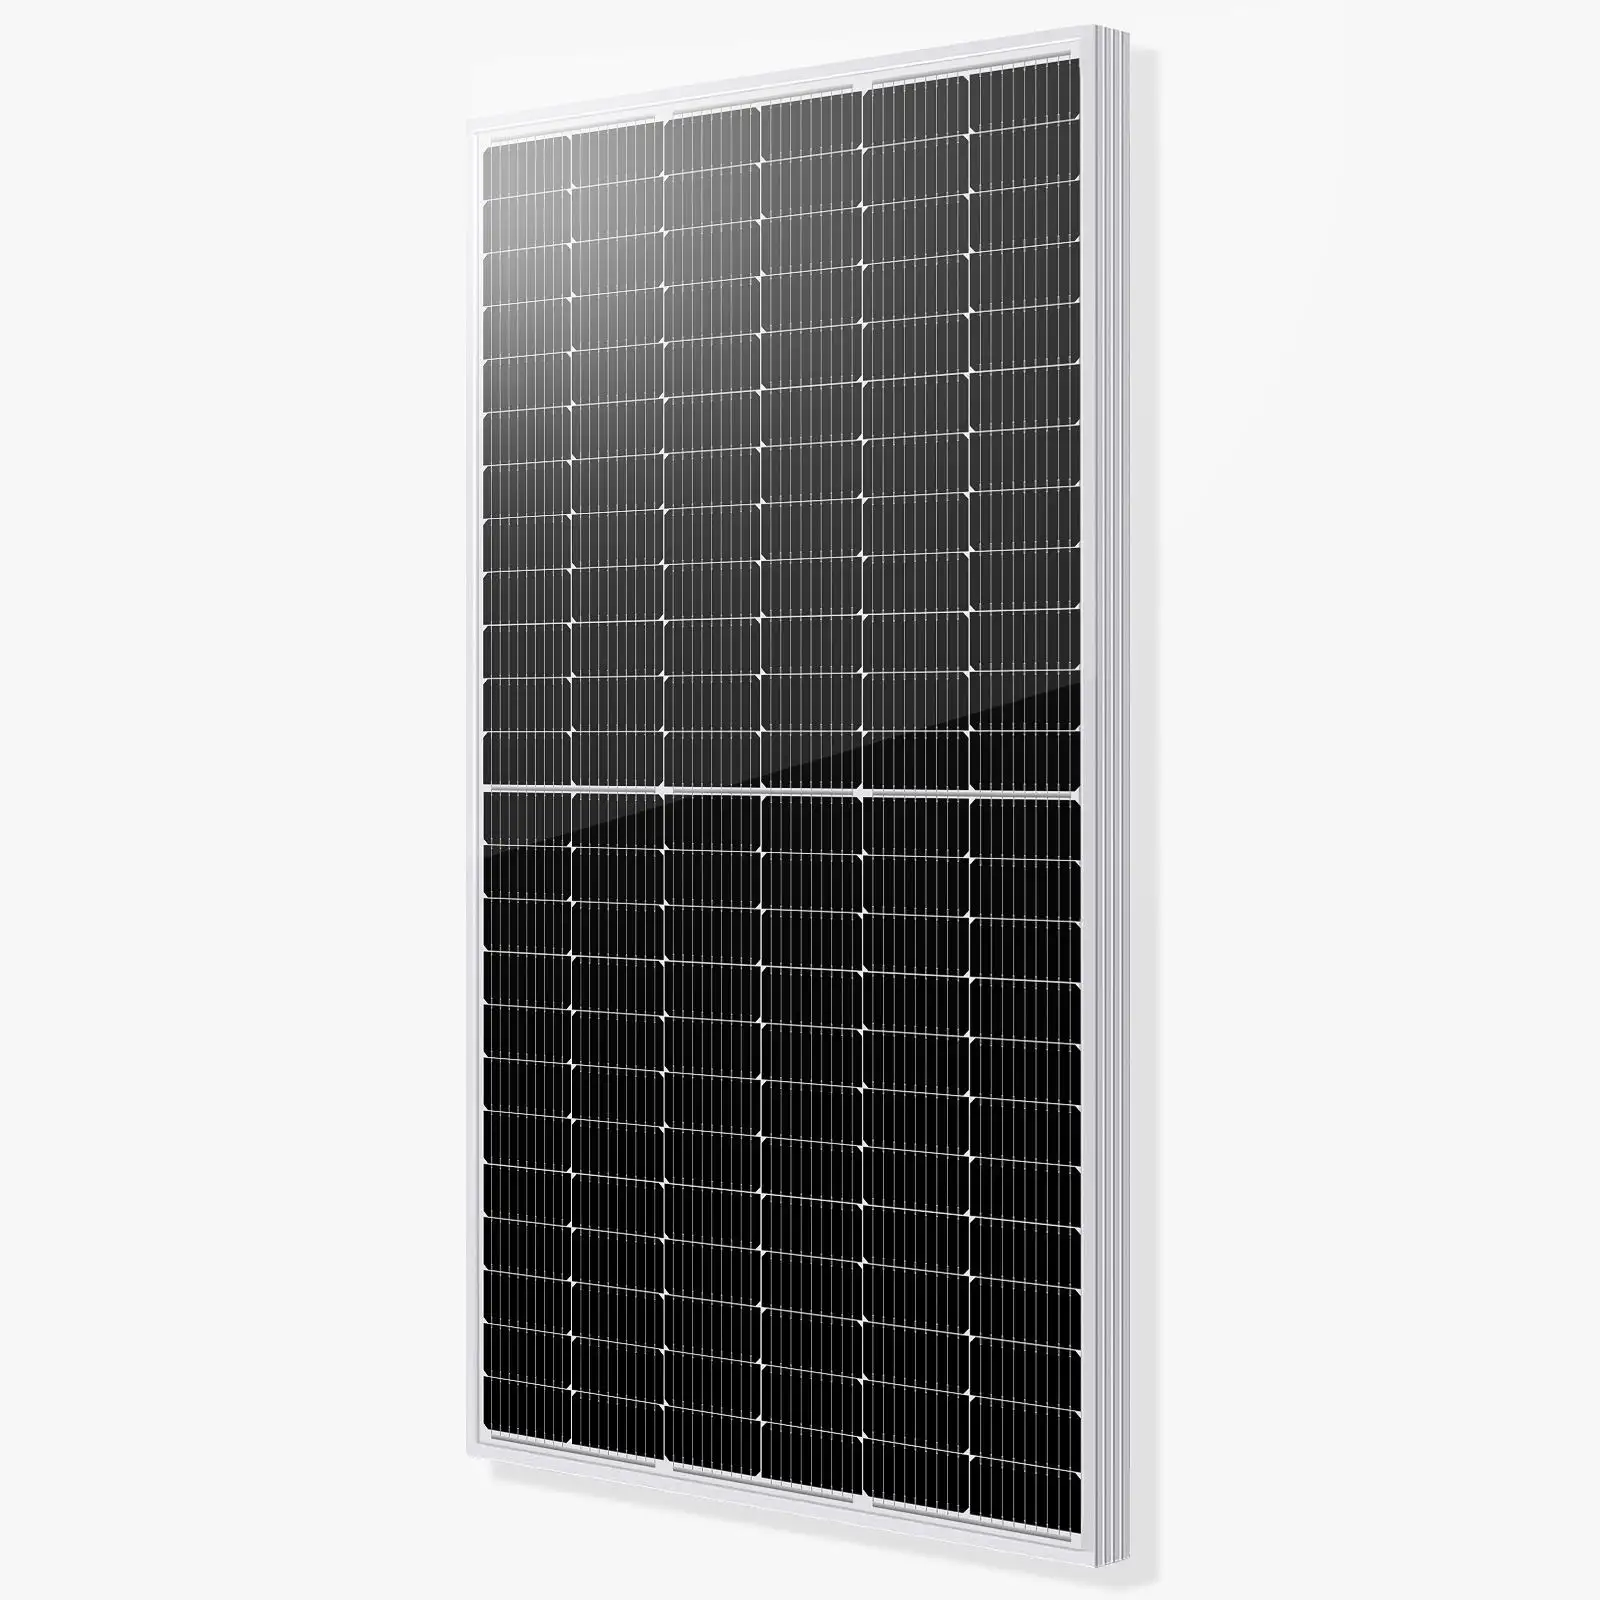 Painel fotovoltaico Kangnan 560w 600w, painel solar de meia célula de 182mm, estoque em Roterdão, 450 watts